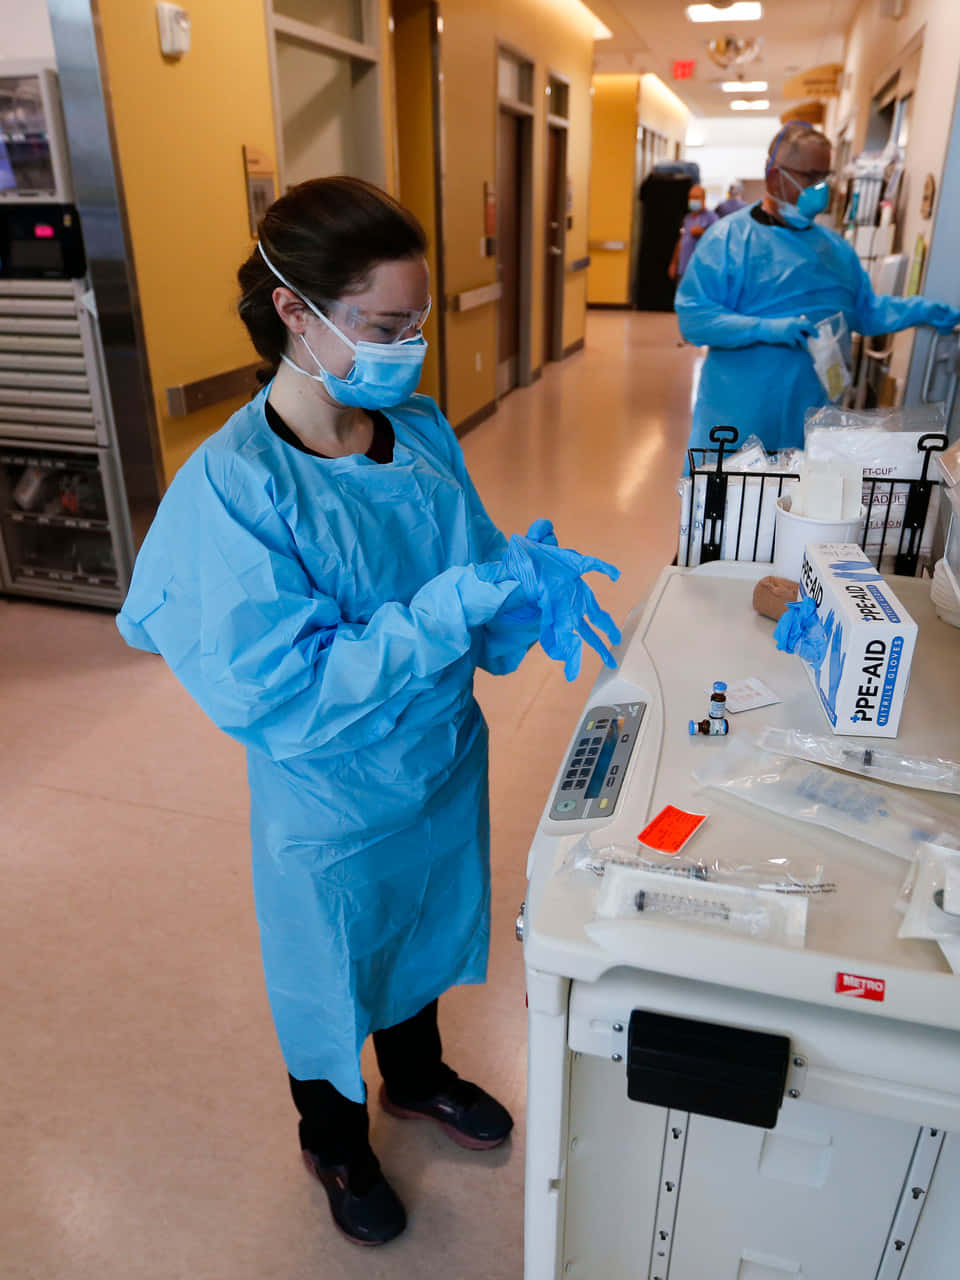 Tvåsjuksköterskor I Skyddsutrustning Står I En Sjukhuskorridor